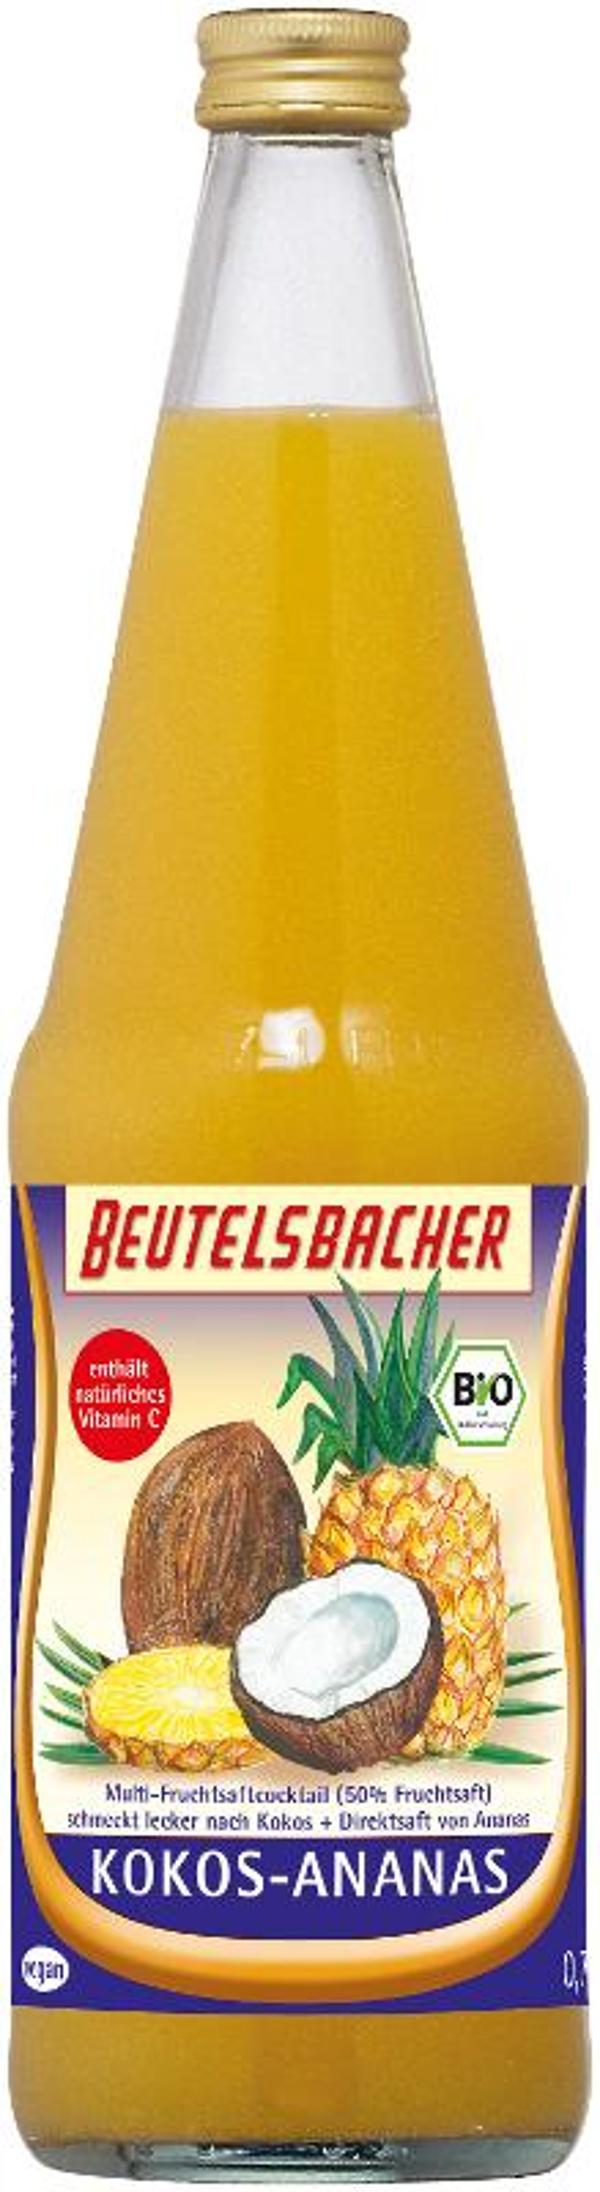 Produktfoto zu Kokos Ananas Saft von Beutelsbacher 0,7l